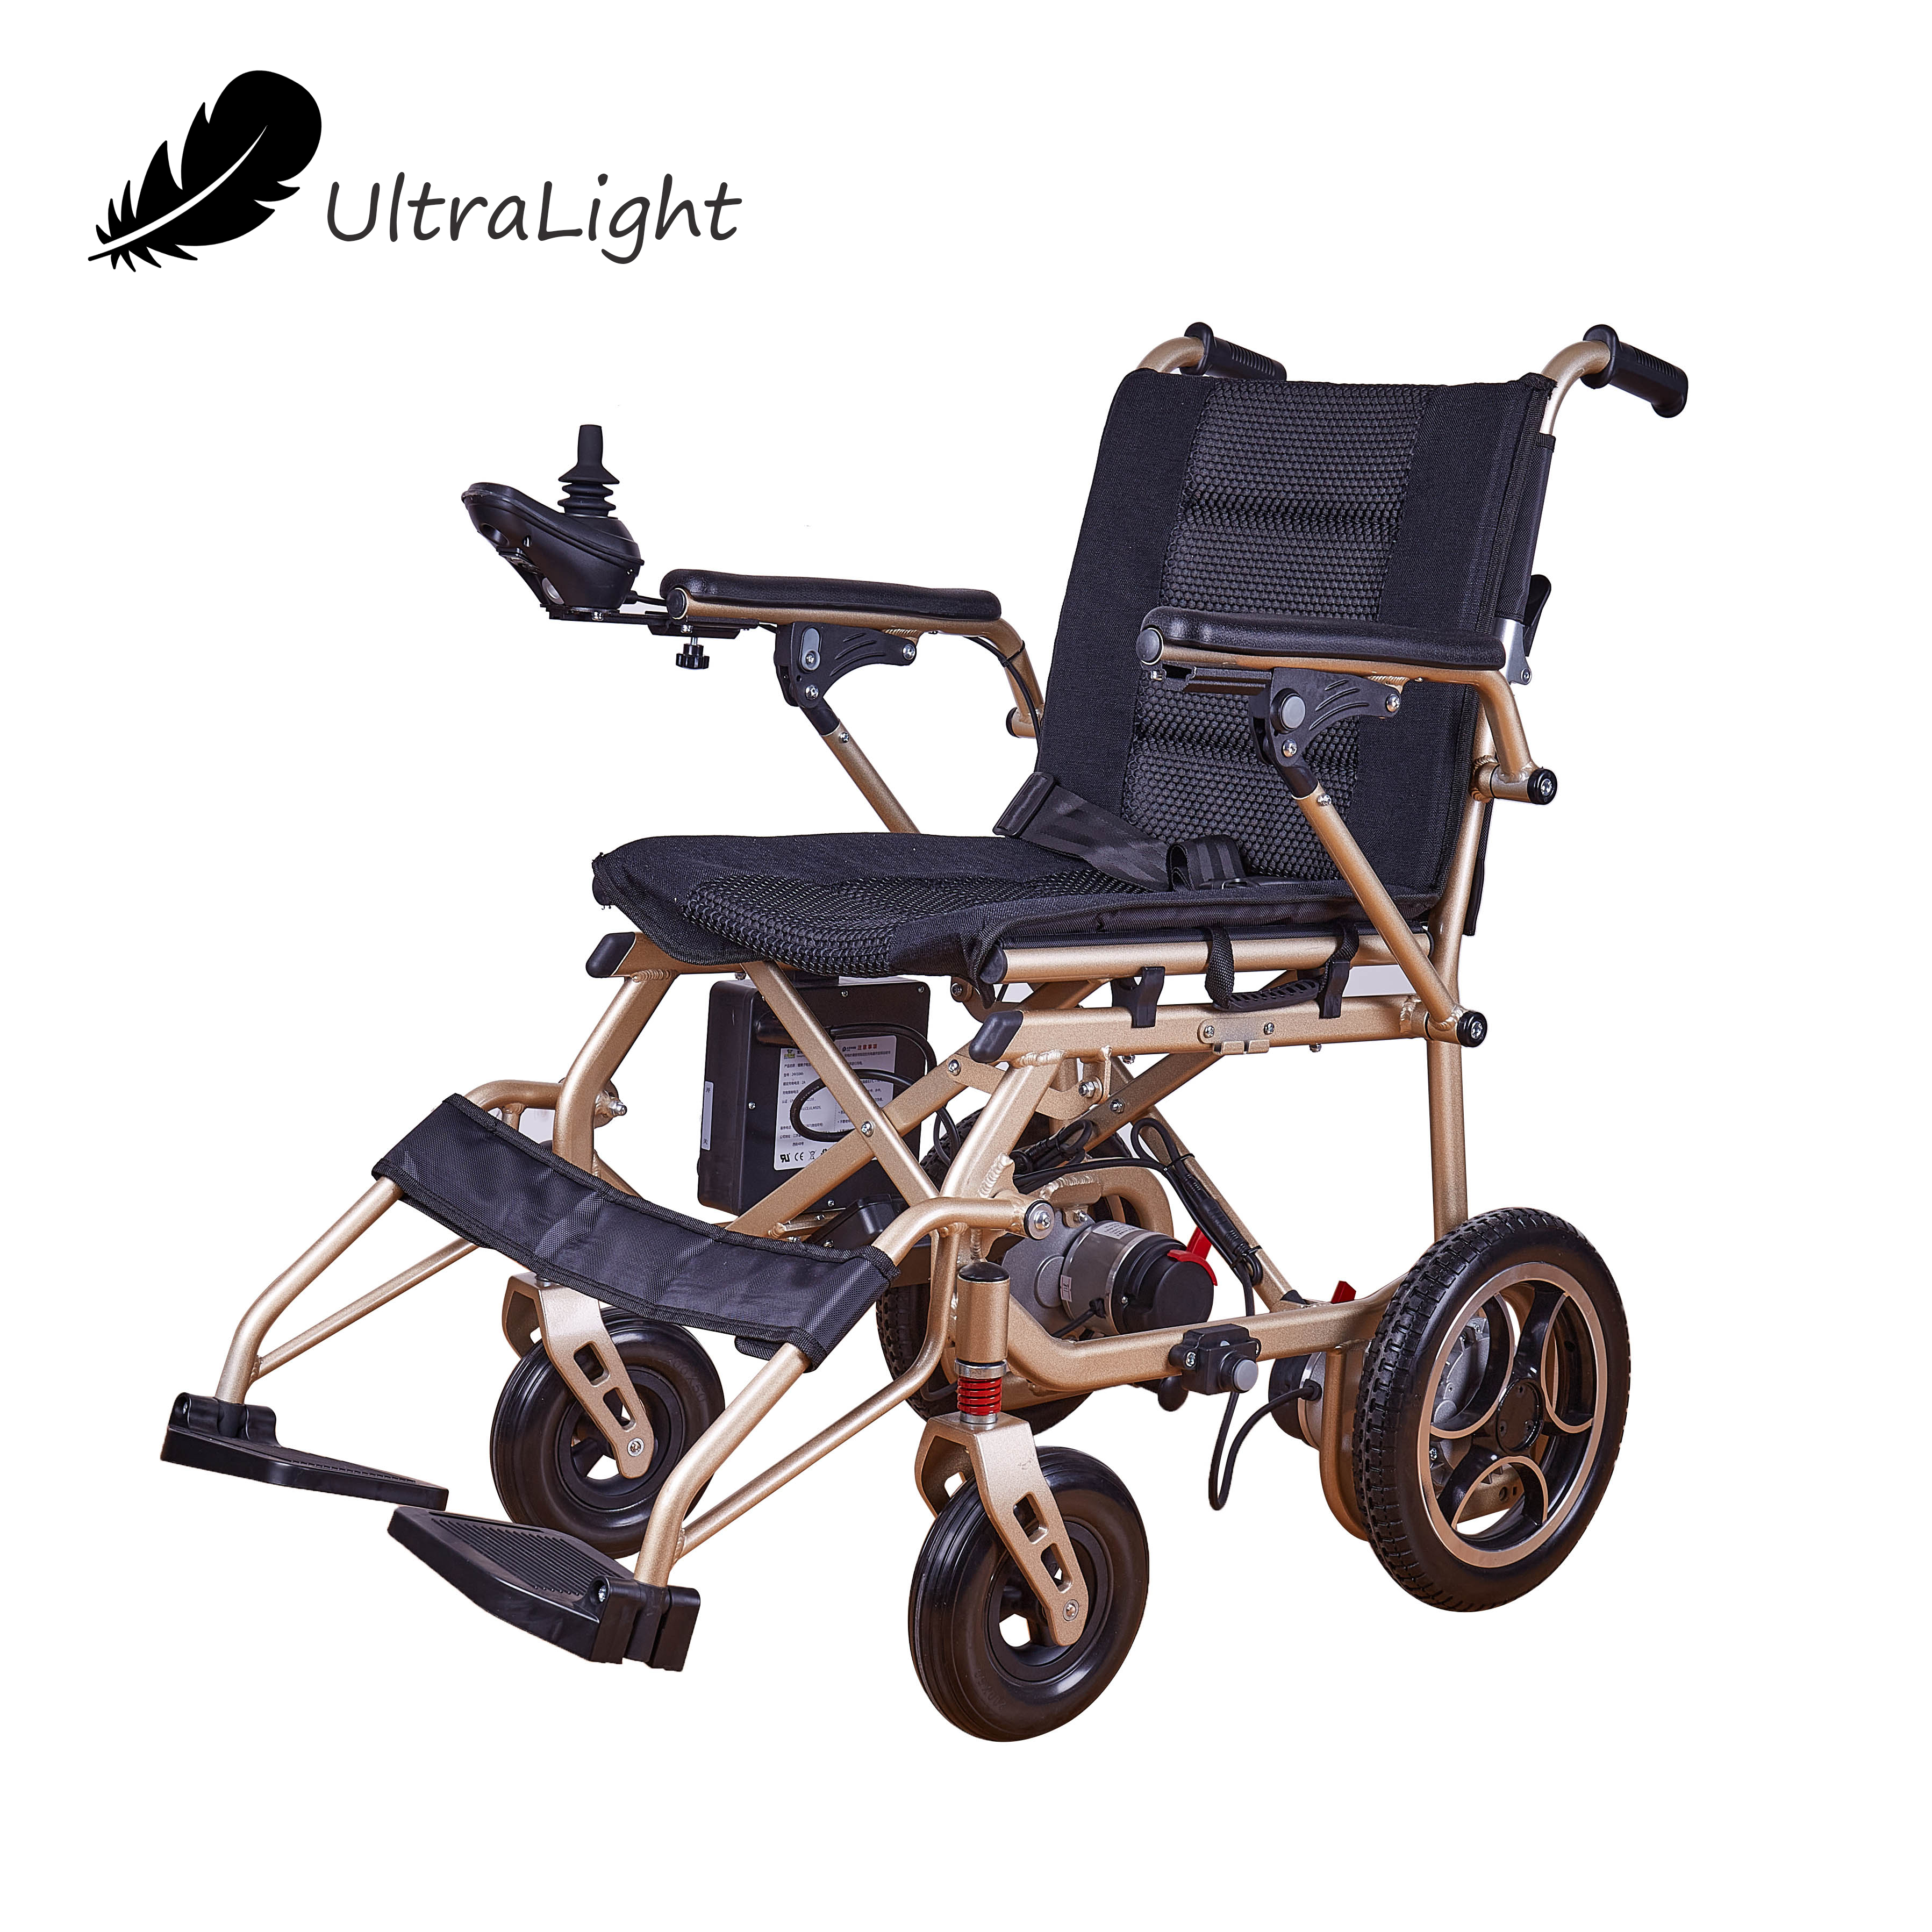 ציוד טיפולי שיקום כיסא גלגלים אלקטרוני מתקפל גב גבוה שכיבה נכים כוח כיסא גלגלים חשמלי לזקנים ולנכים